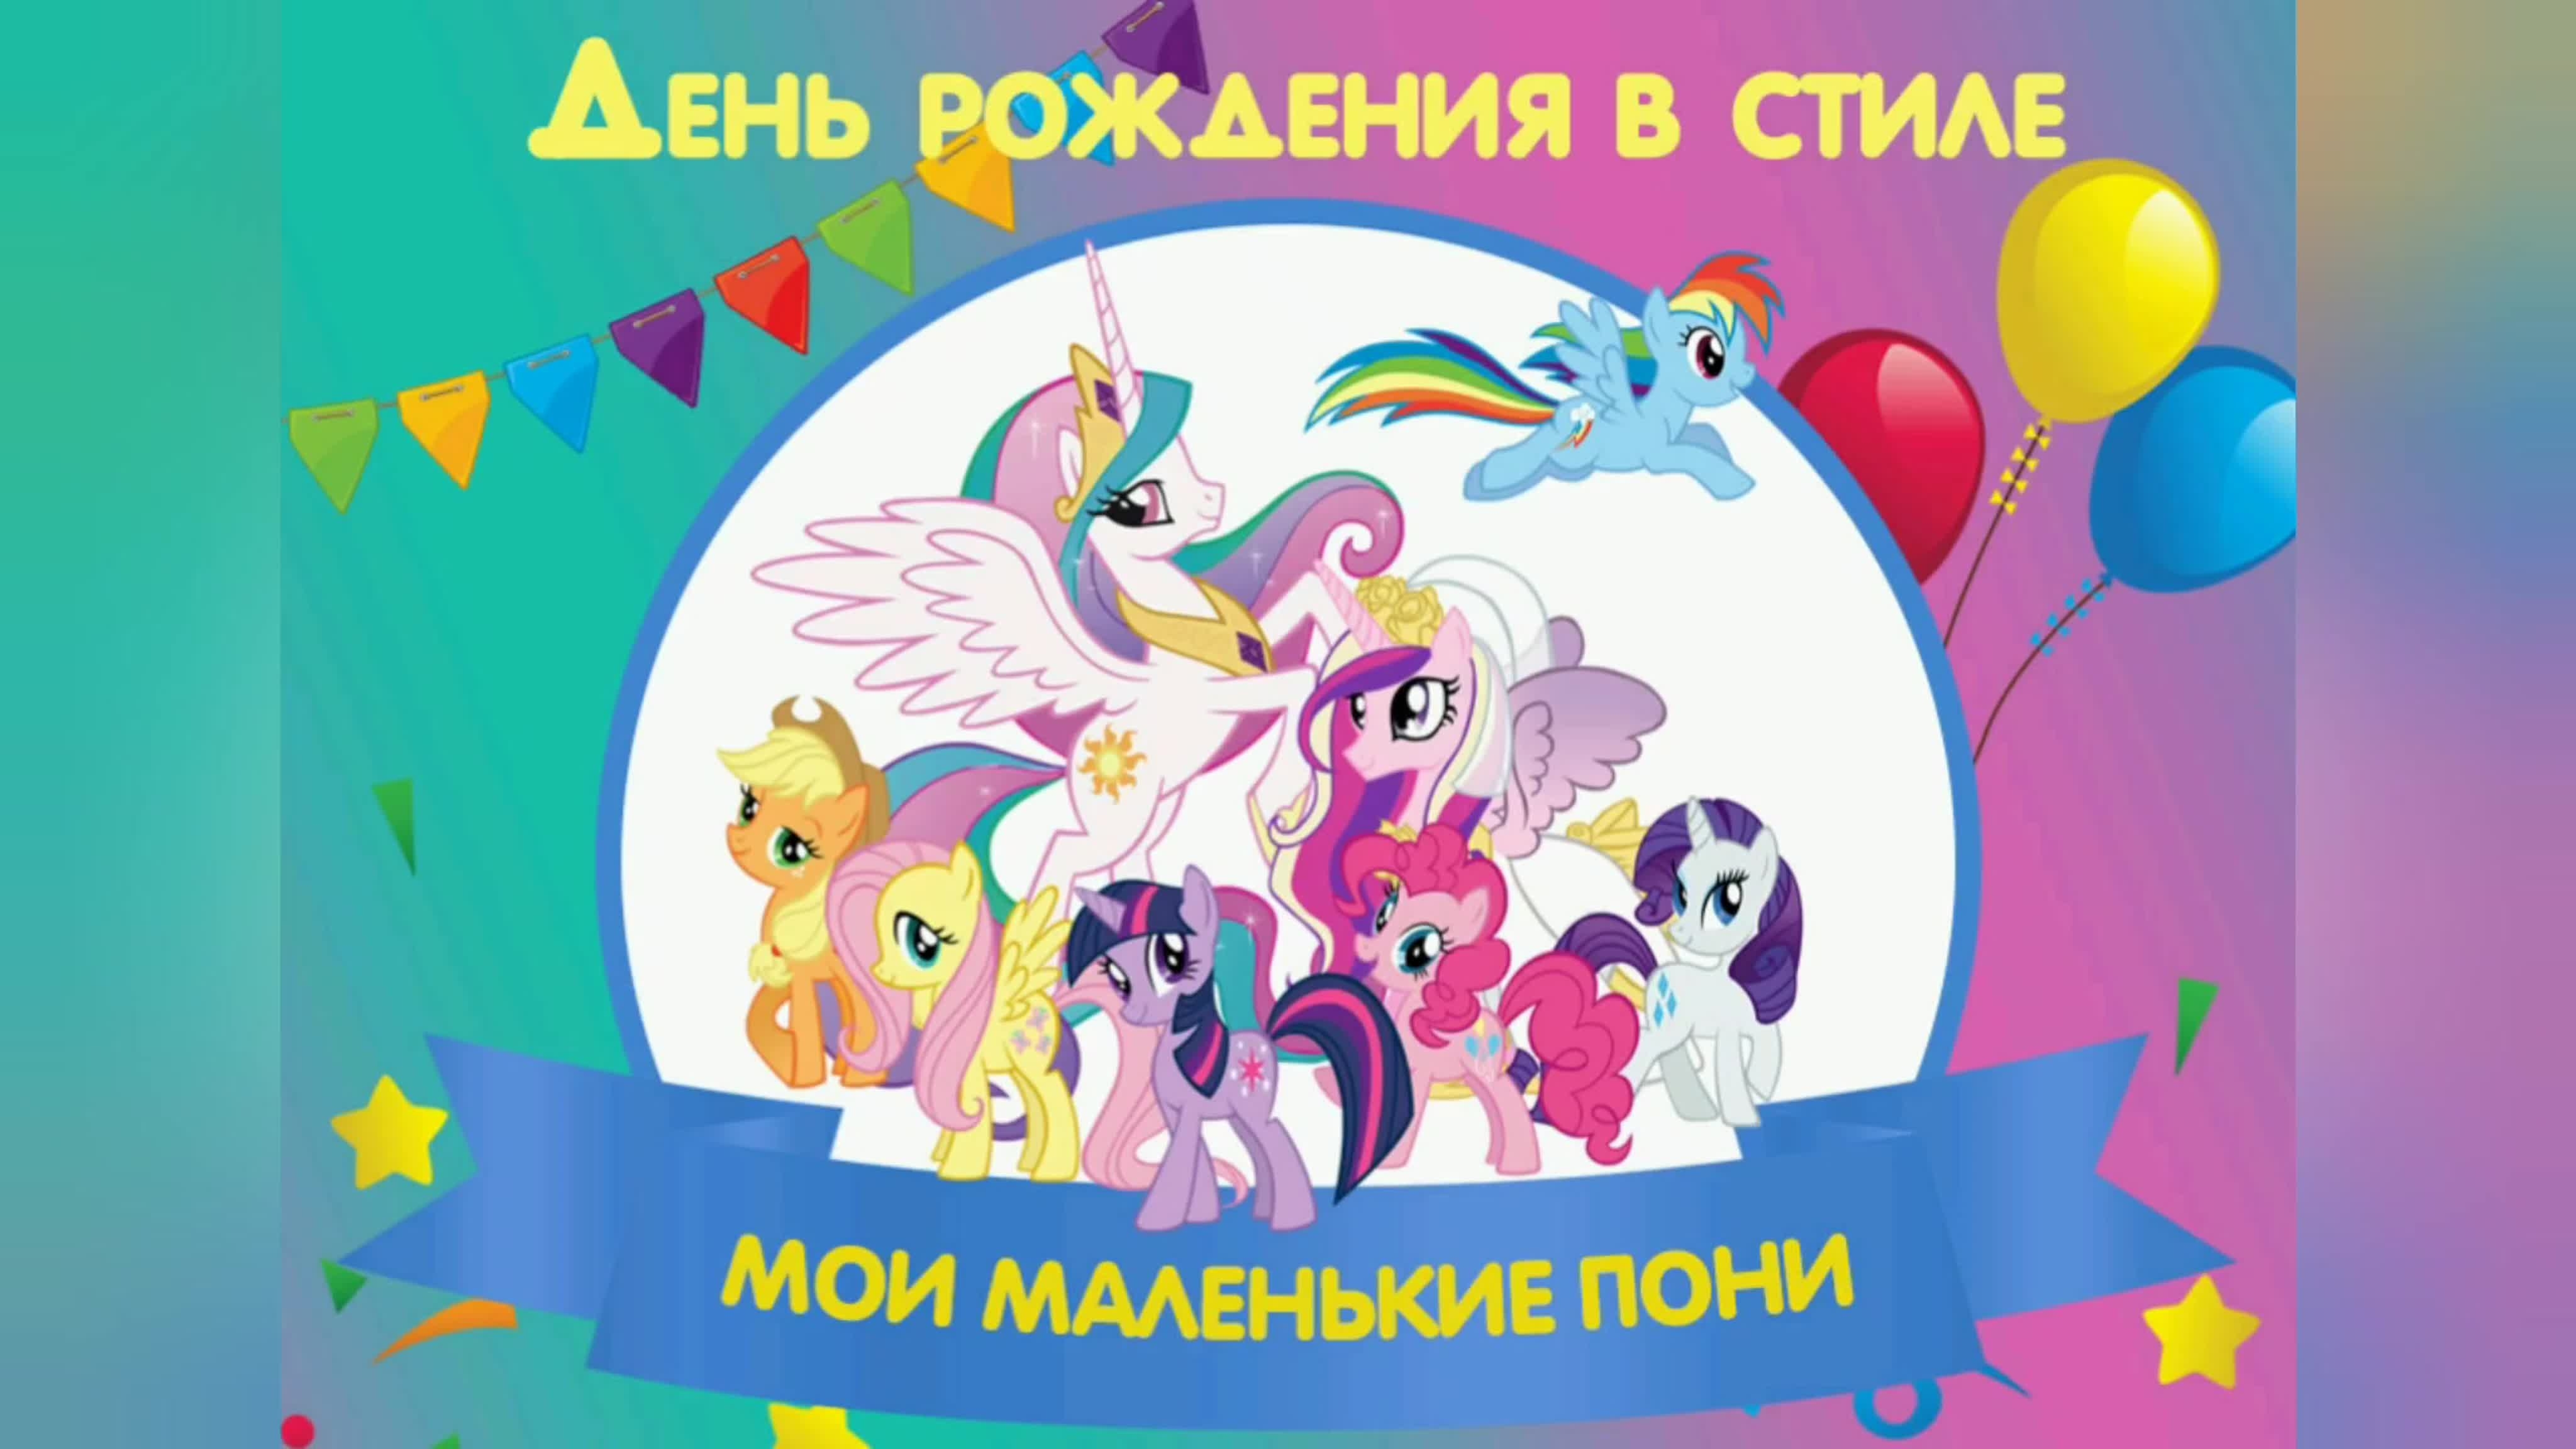 Май литл пони рождения пони. My little Pony с днем рождения. Плакат на день рождения пони. С днём рождения мой маленький пони. День рождения в стиле мой маленький пони.